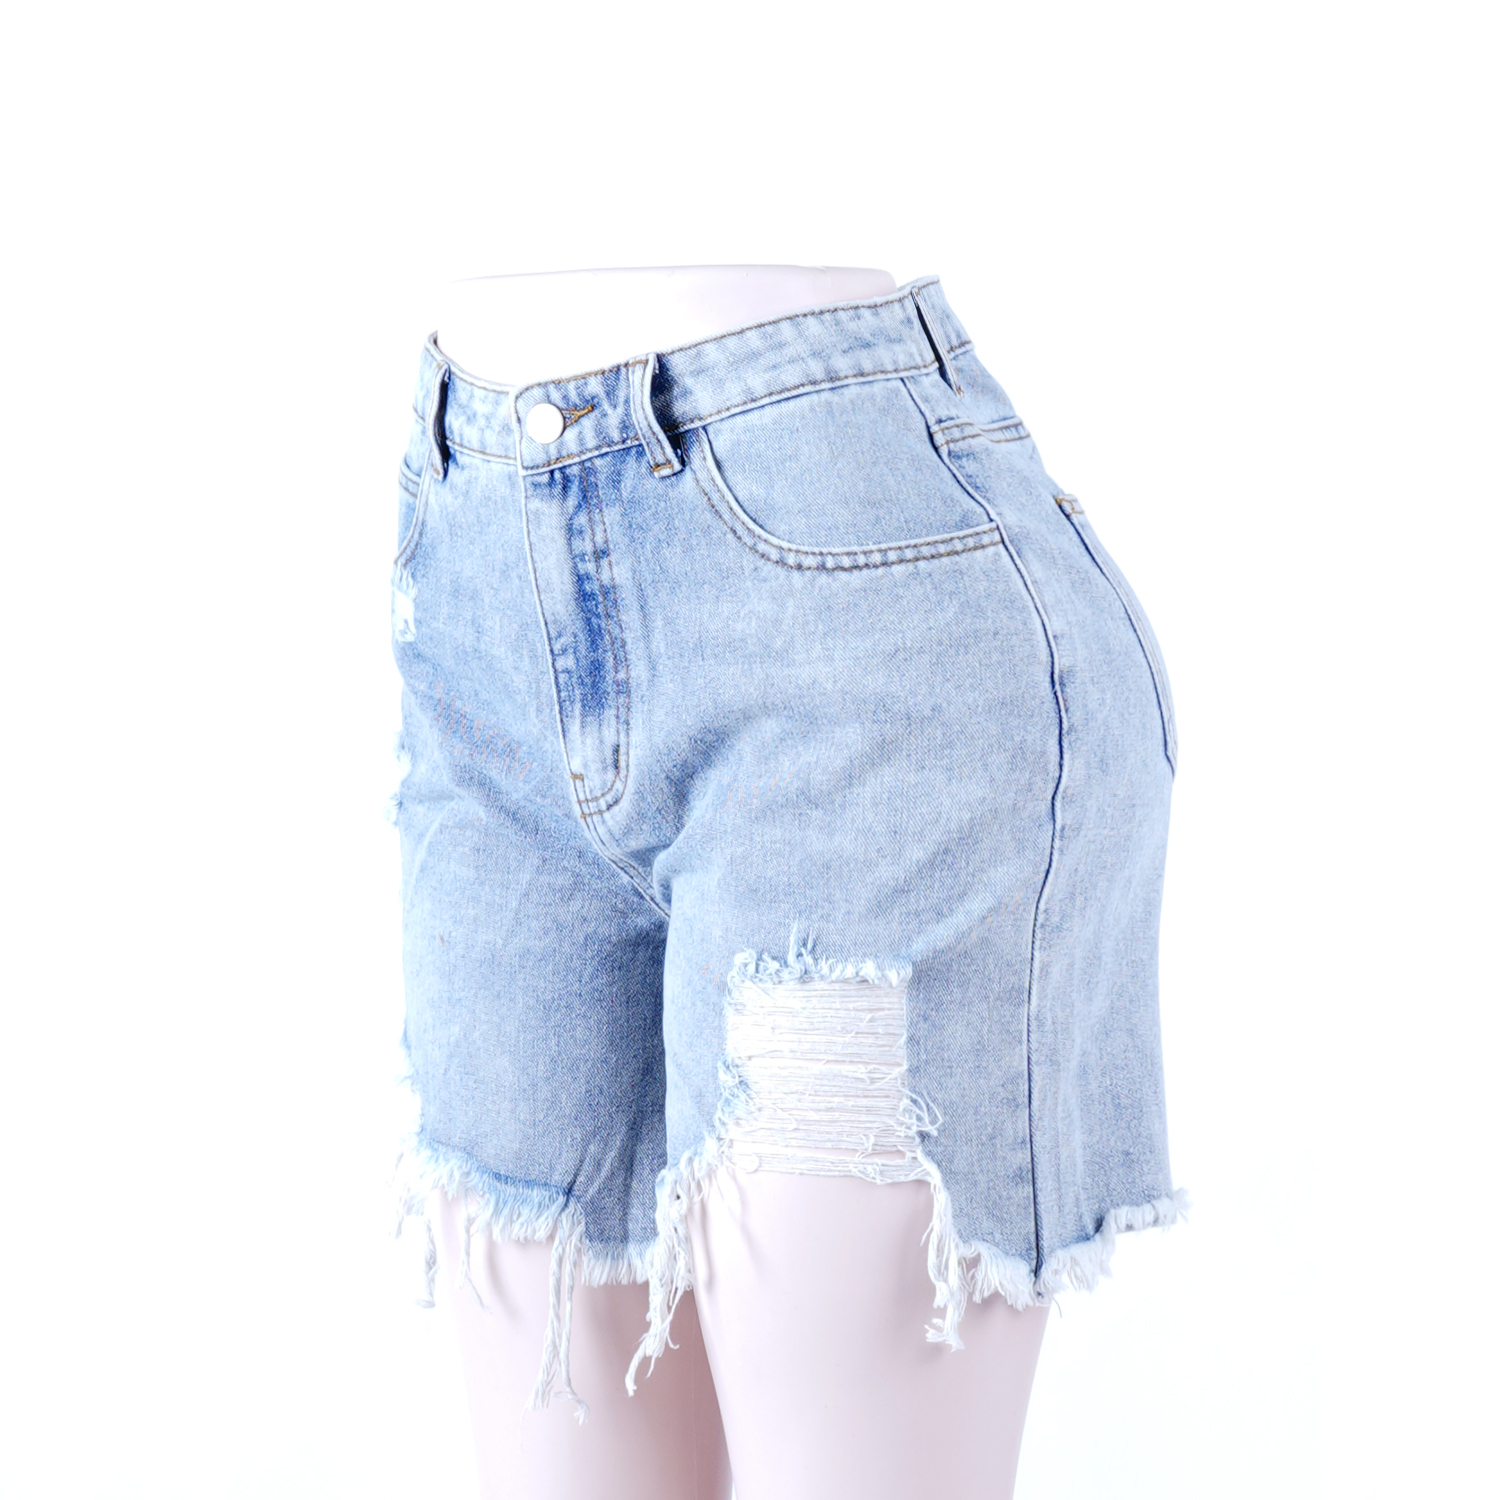 SKYKINGDOM newly jeans summer hot light blue ripped tassel high waist denim shorts women